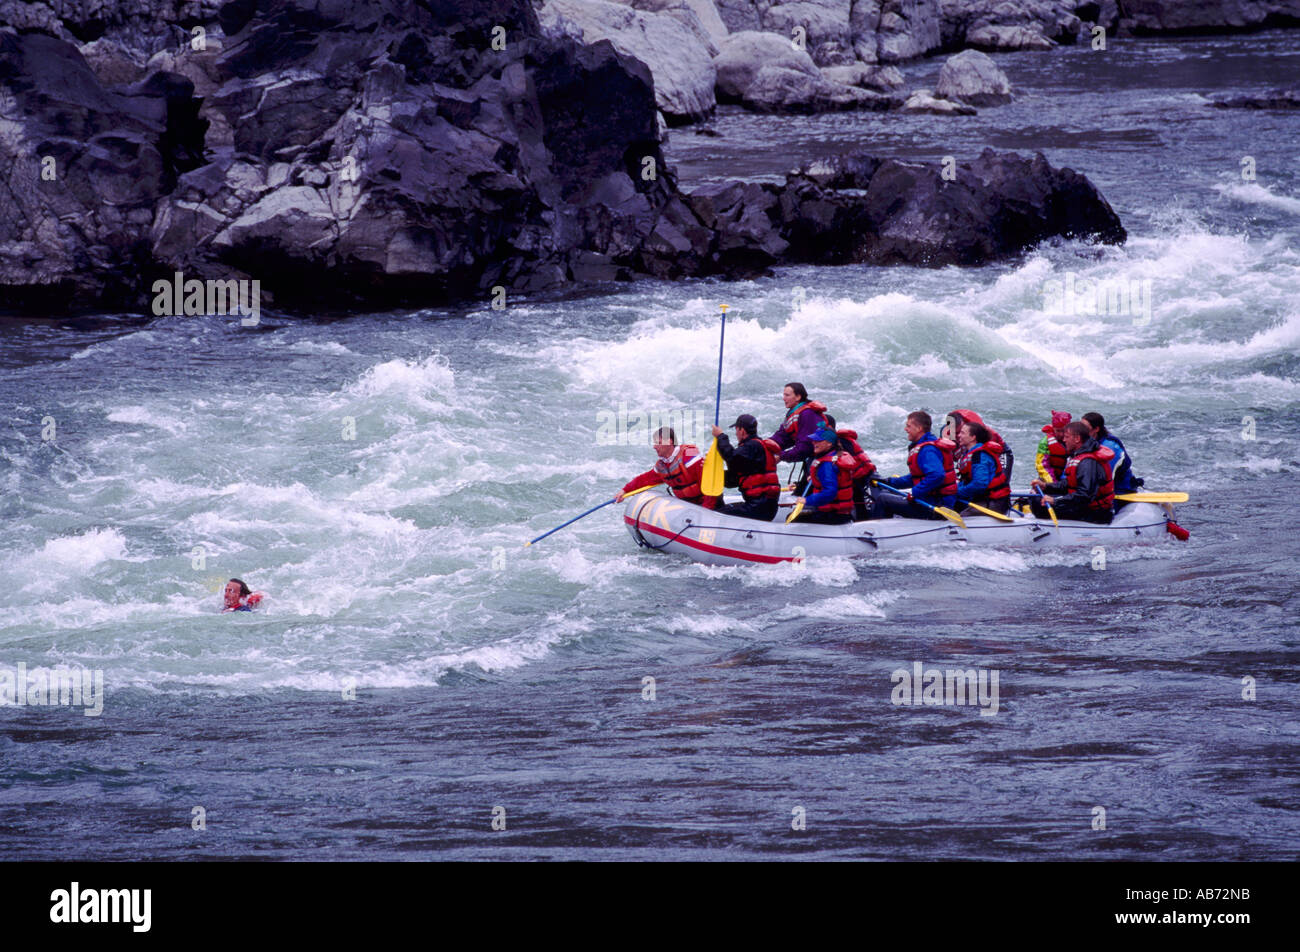 Cerca del Río Thompson Lytton, BC, British Columbia, Canadá - El hombre por la borda en White Water Rafting / accidente Foto de stock